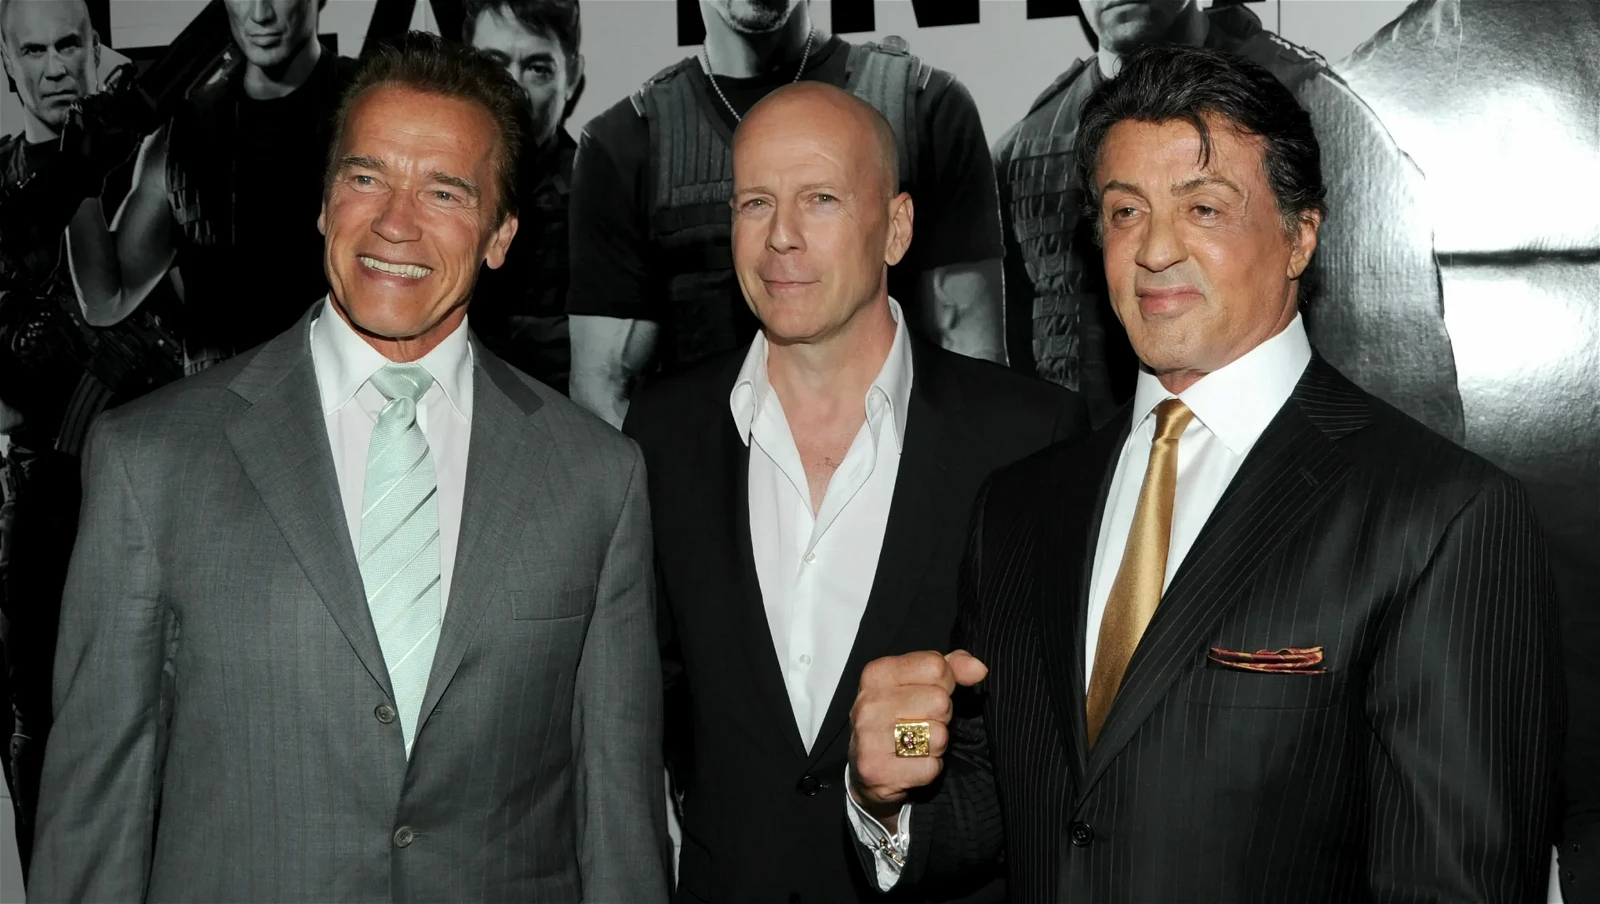 Arnold Schwarzenegger, Bruce Willis, and Sylvester Stallone